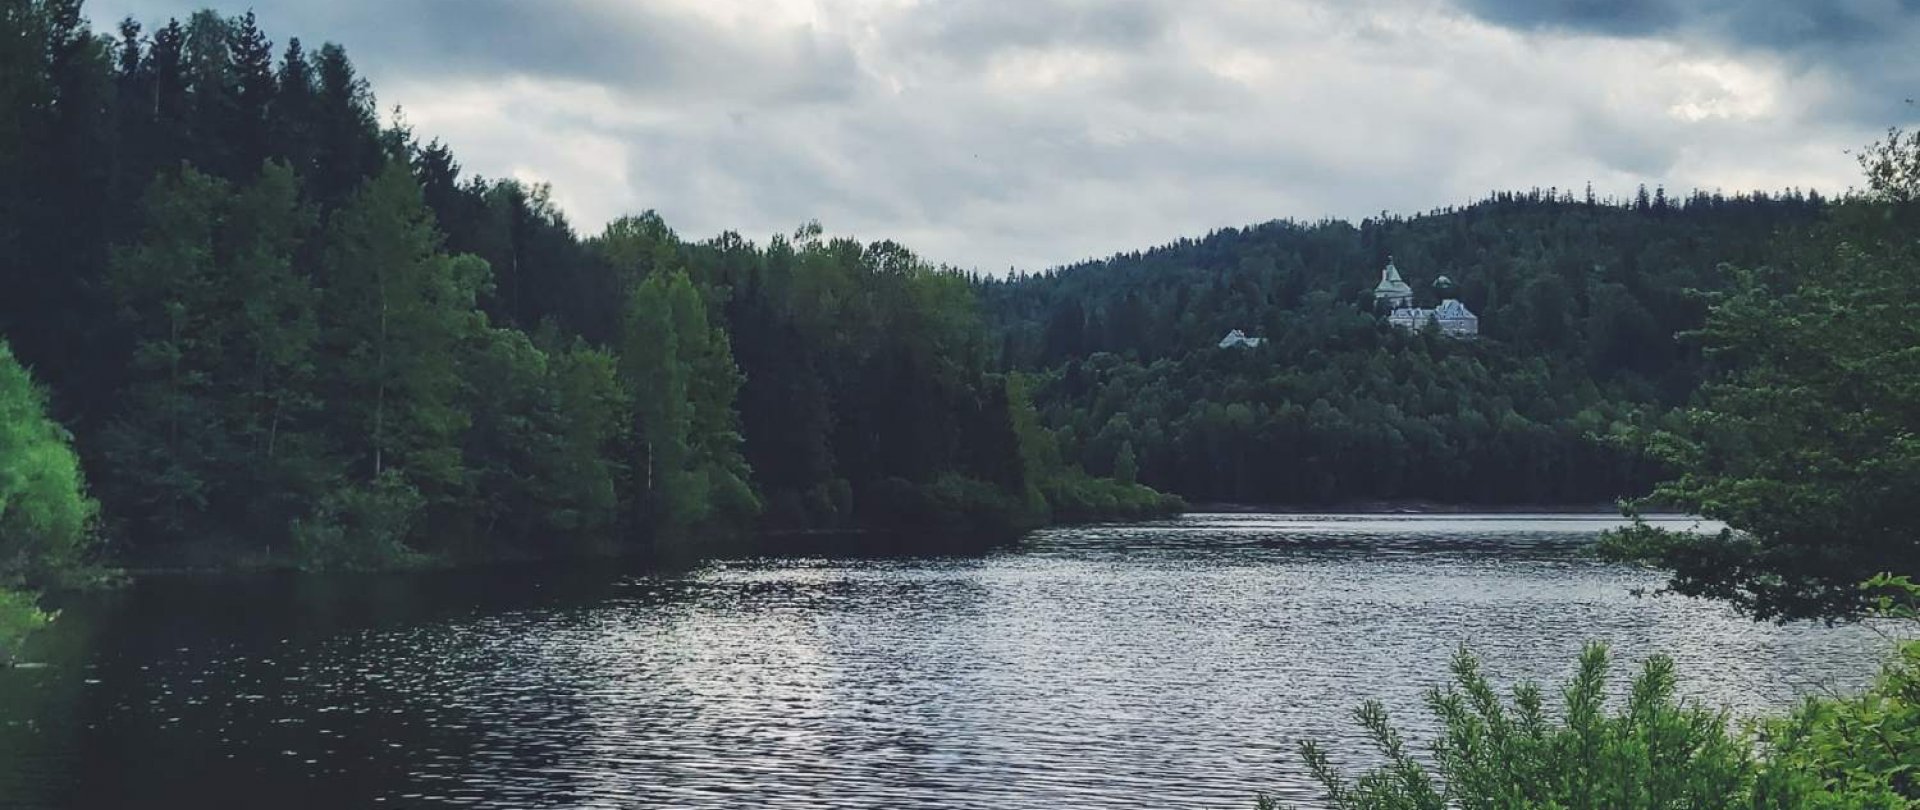 Černianské jezero - krajinářská atrakce ve městě Wisła